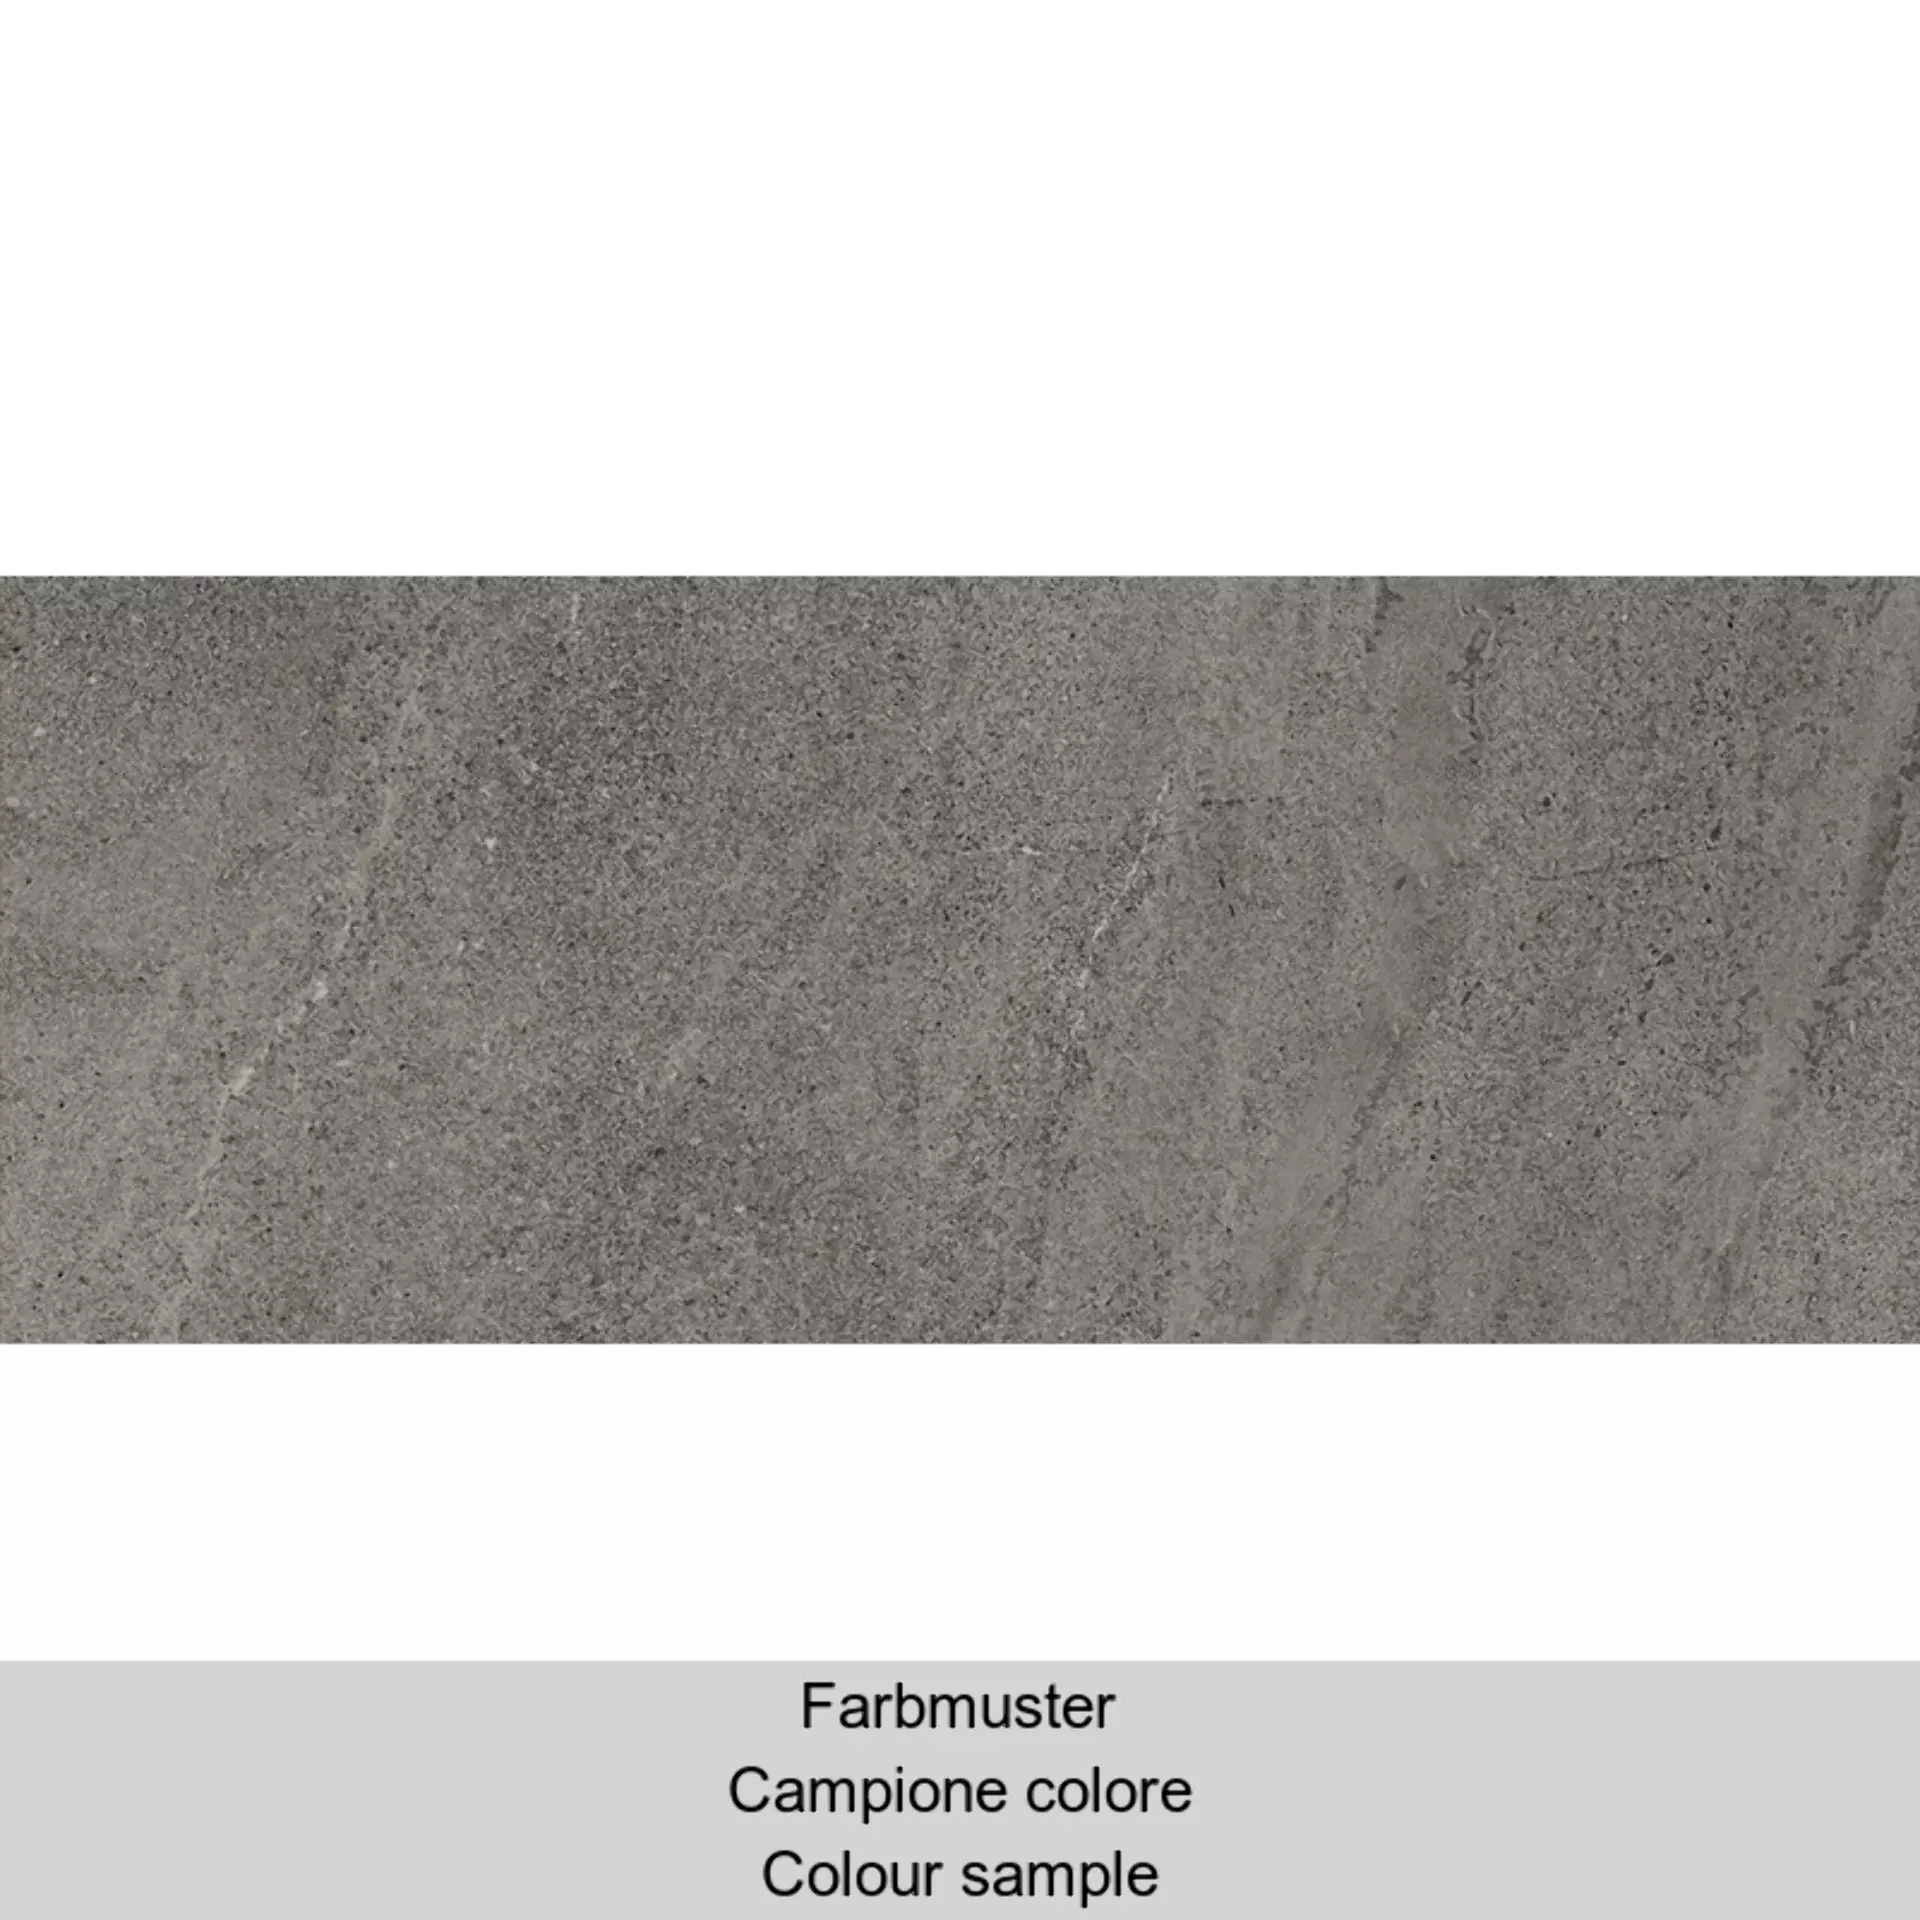 Cottodeste Kerlite Limestone Slate Naturale Protect EK6LS30 100x250cm rectified 5,5mm